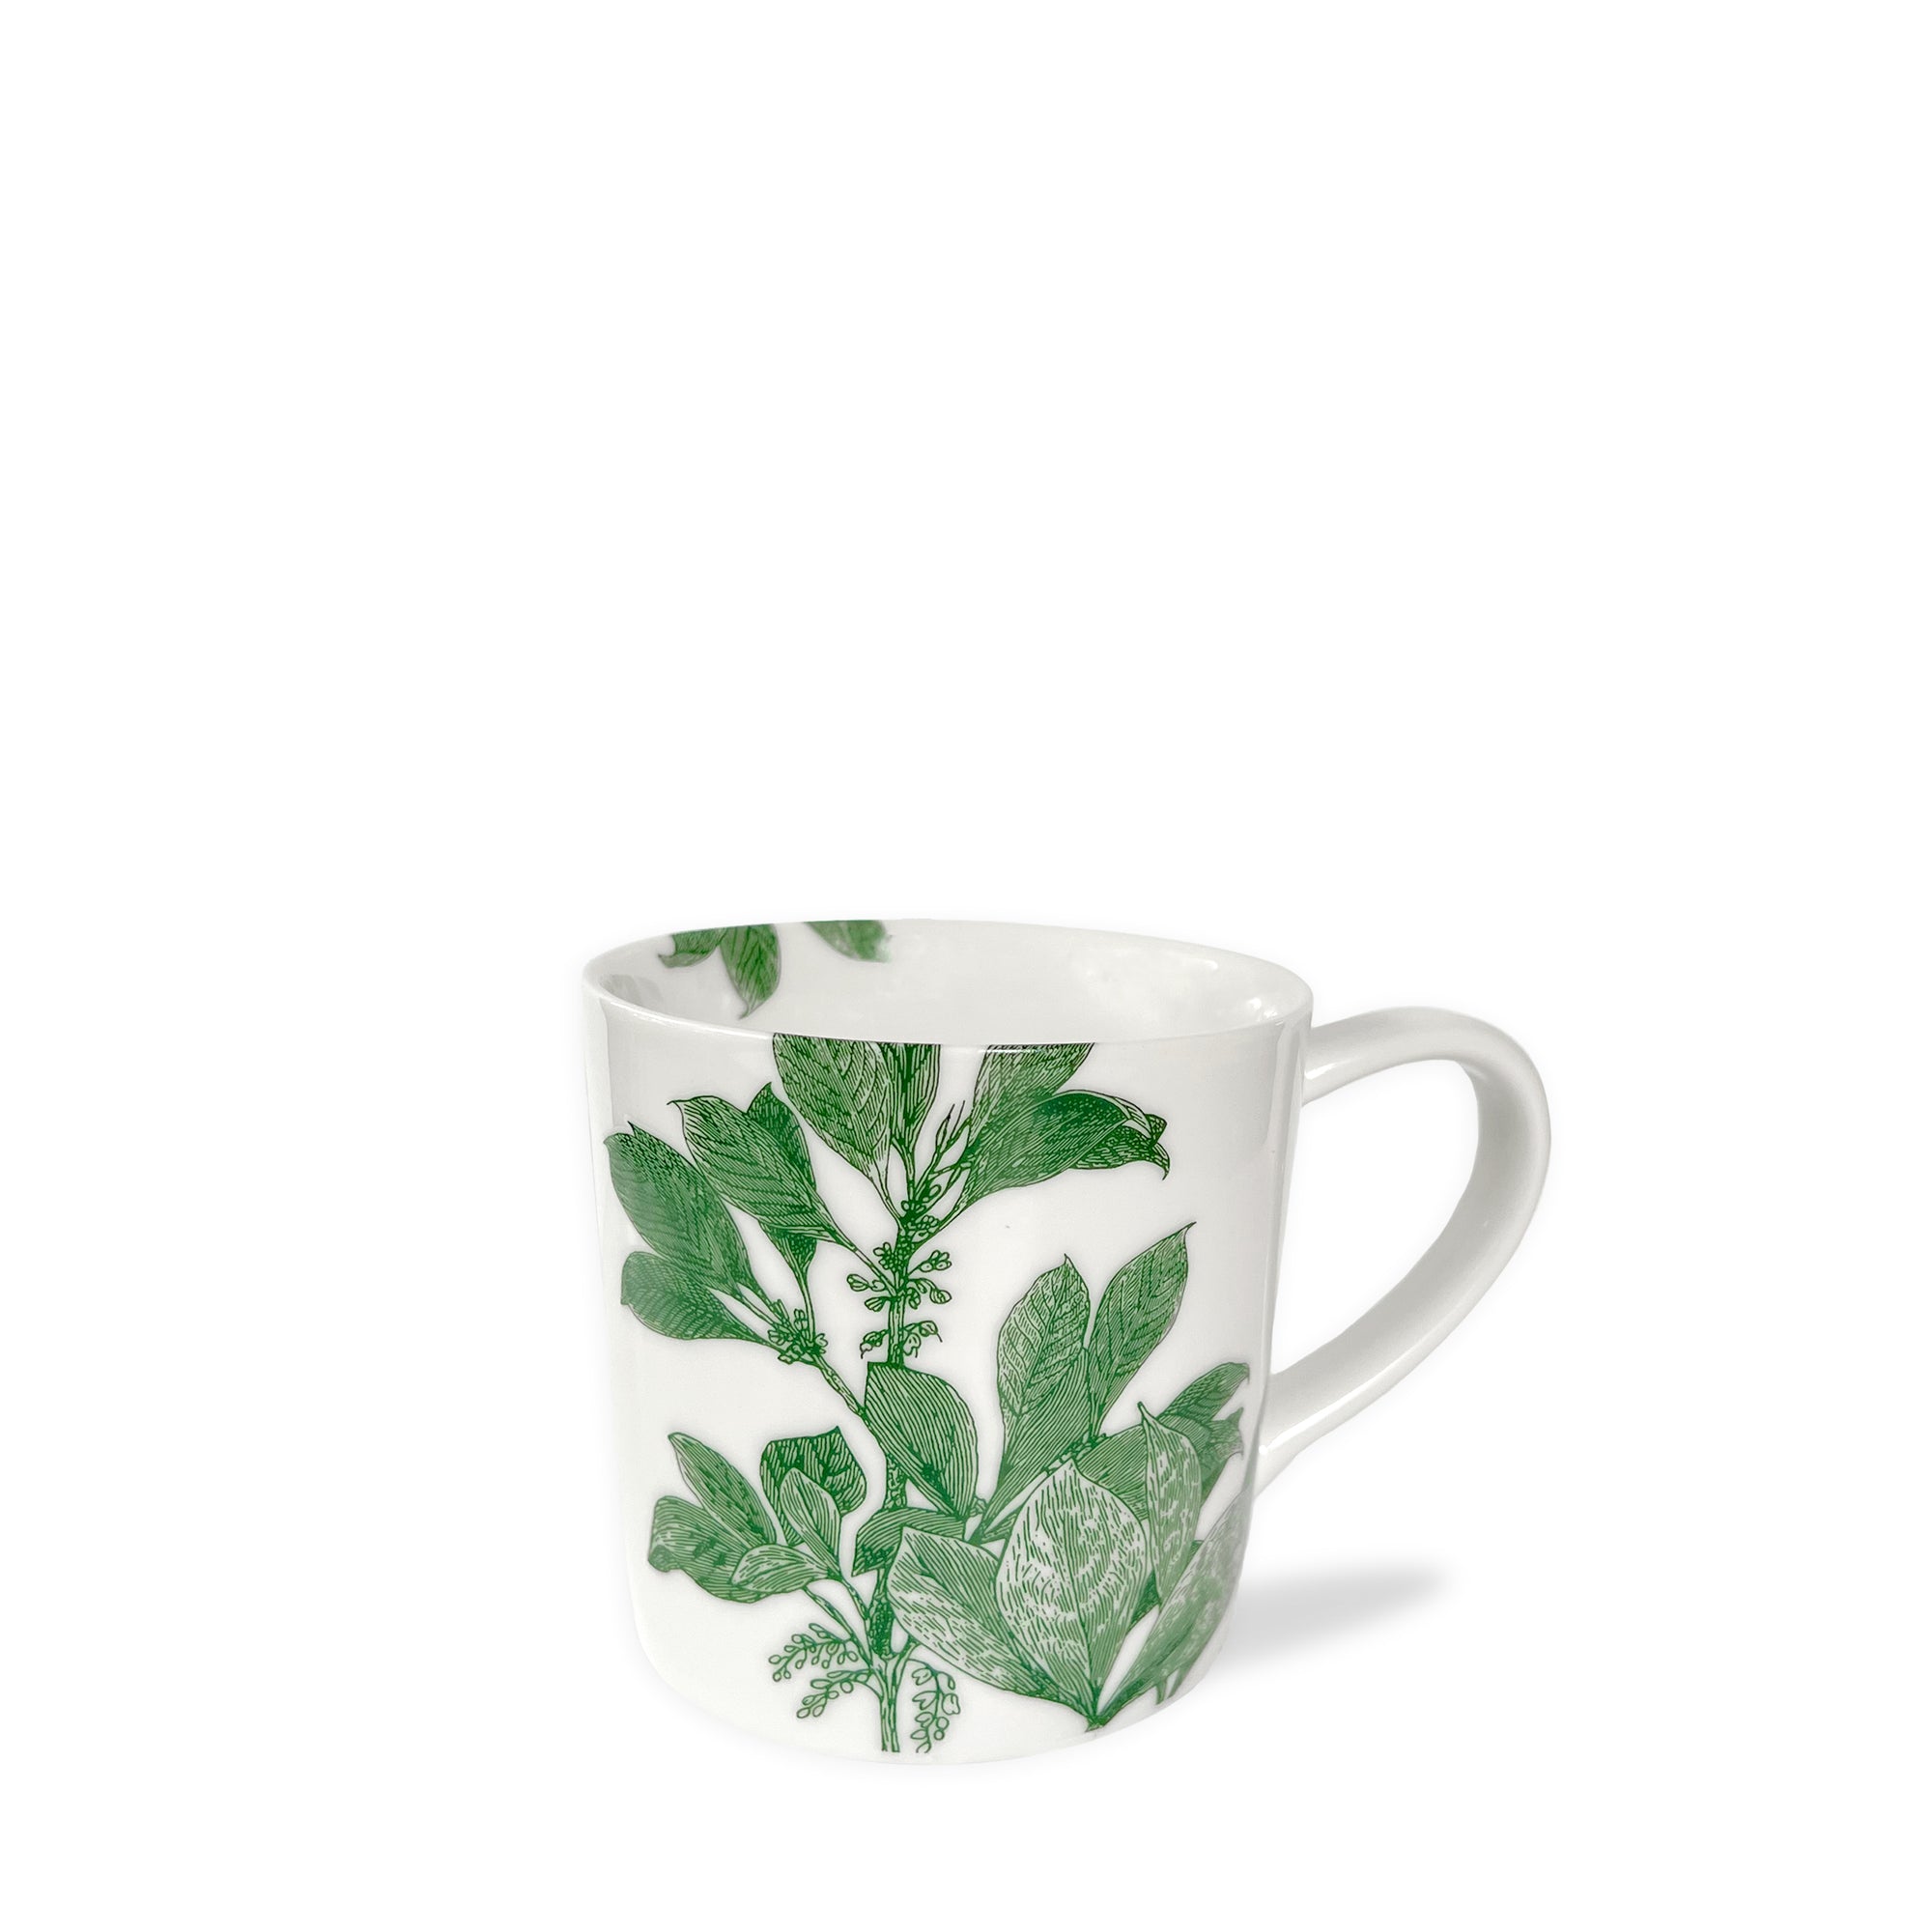 Arbor Green Mug from Caskata.